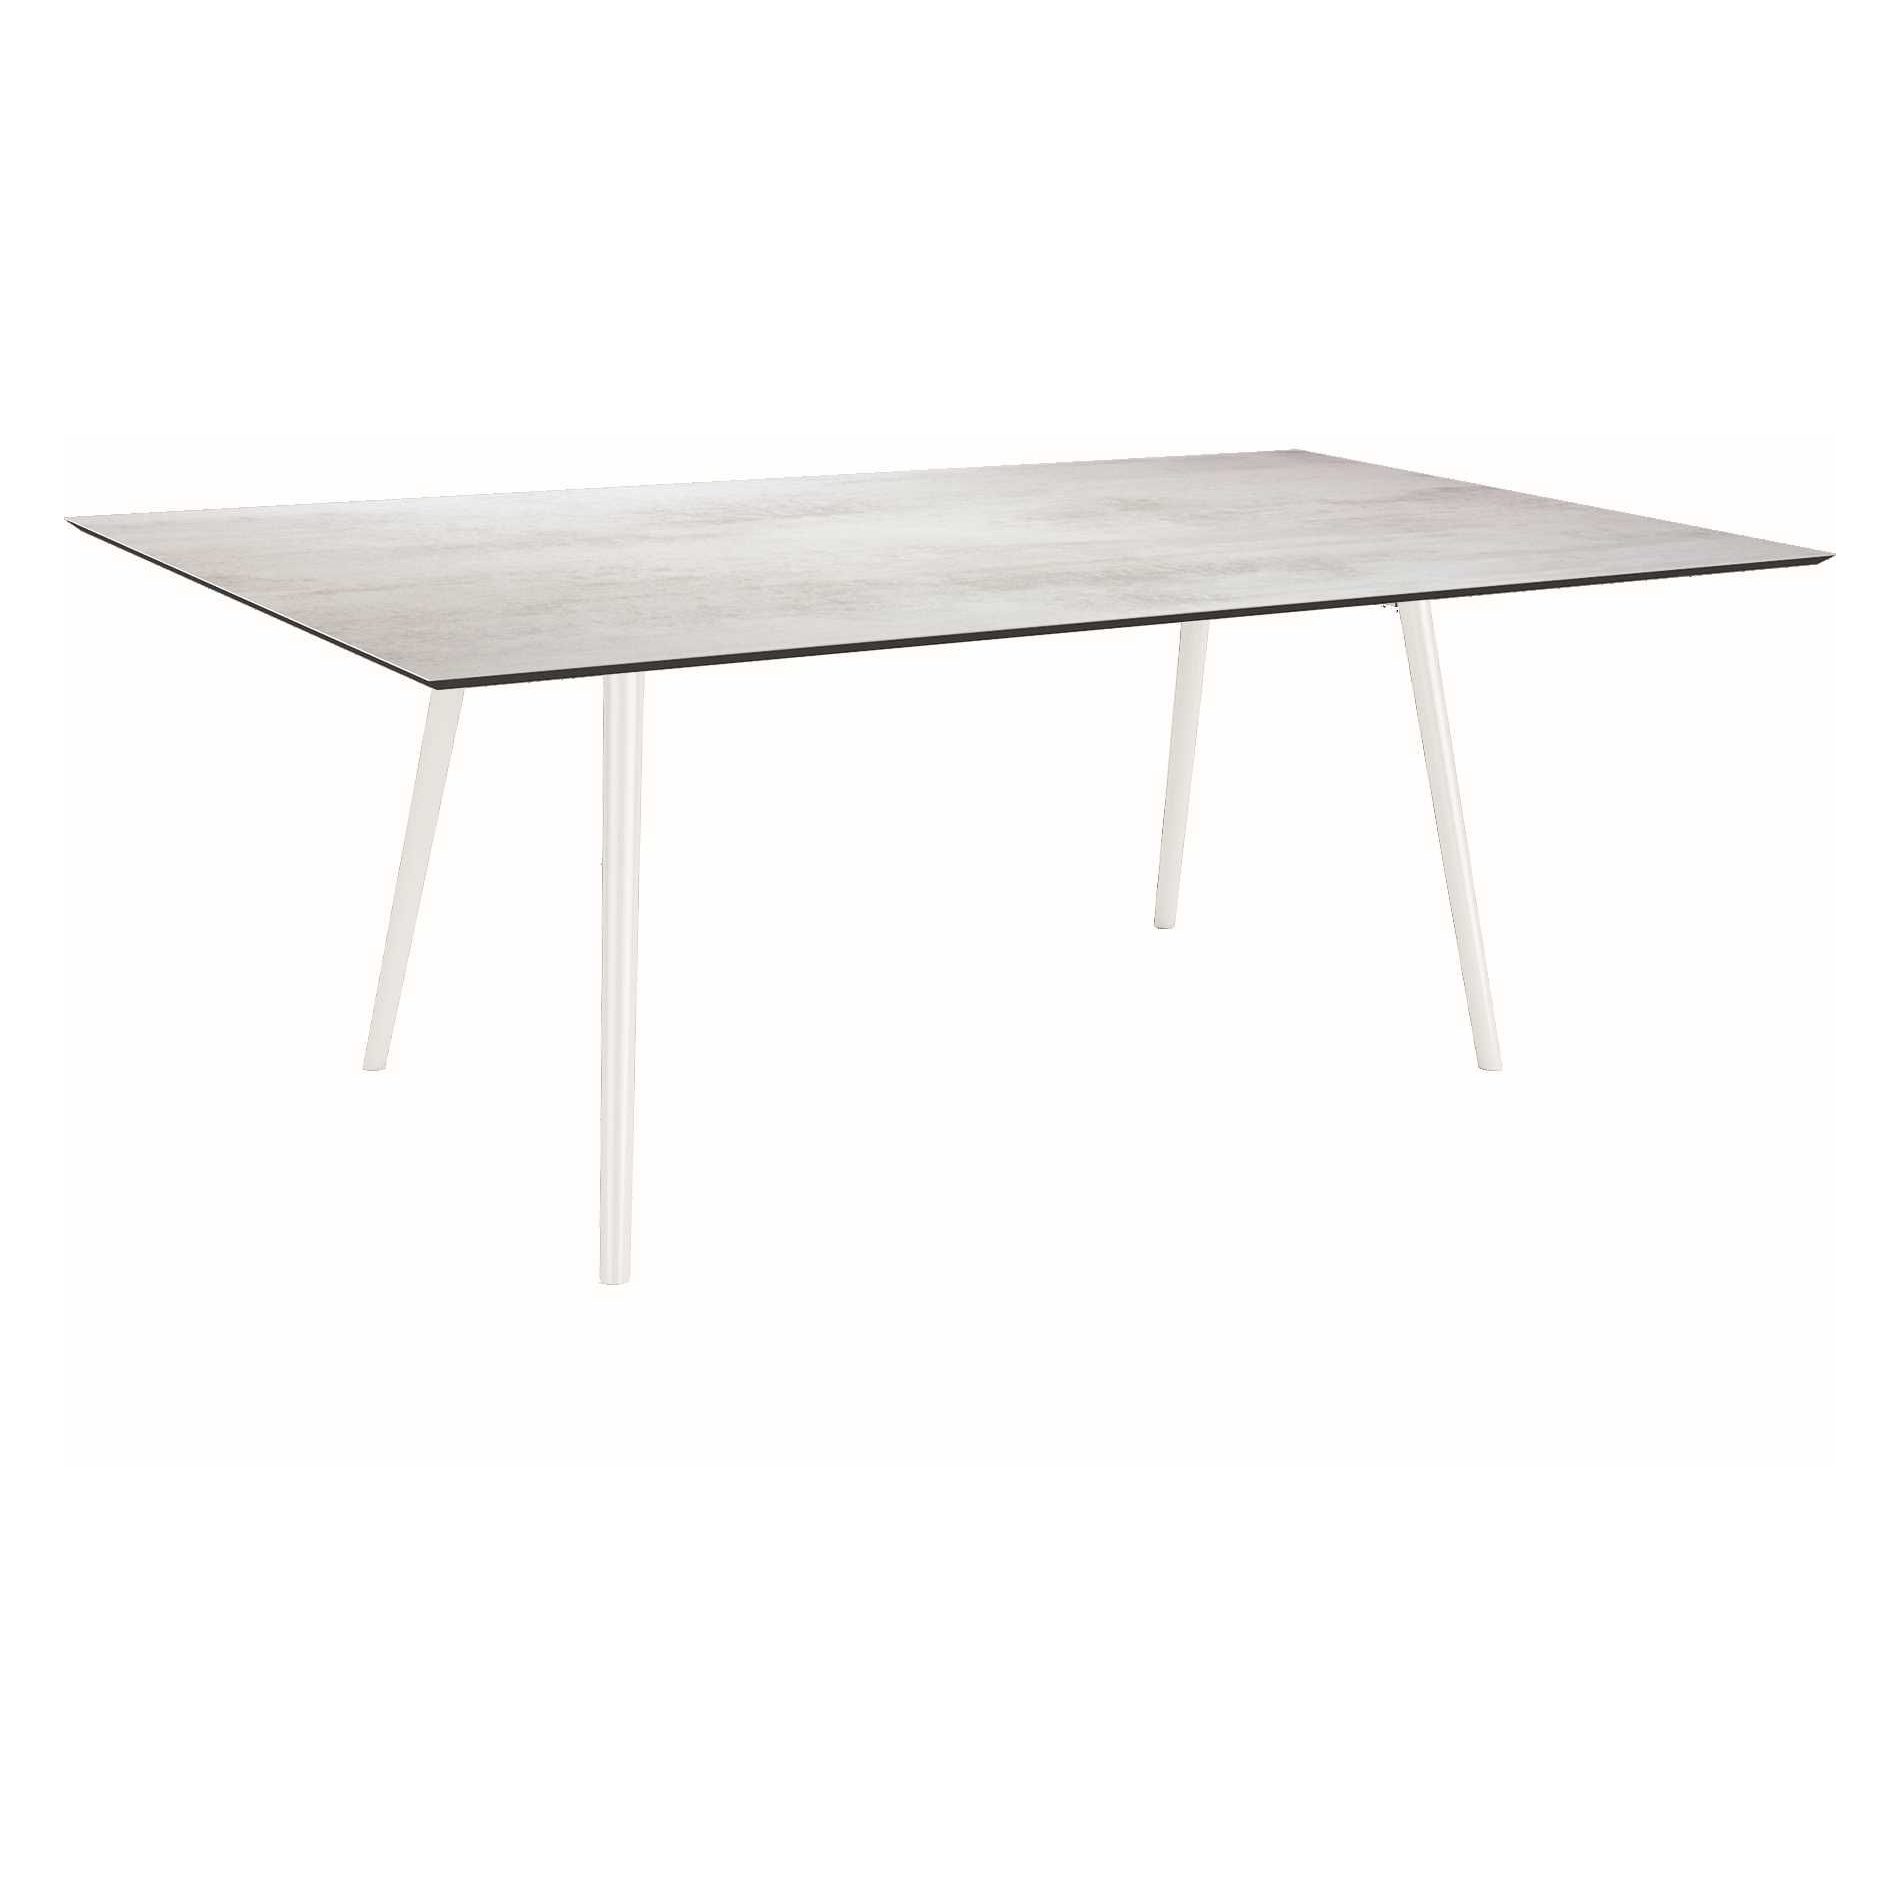 Stern Tisch "Interno", Größe 180x100cm, Alu weiß, Rundrohr, Tischplatte HPL Zement hell